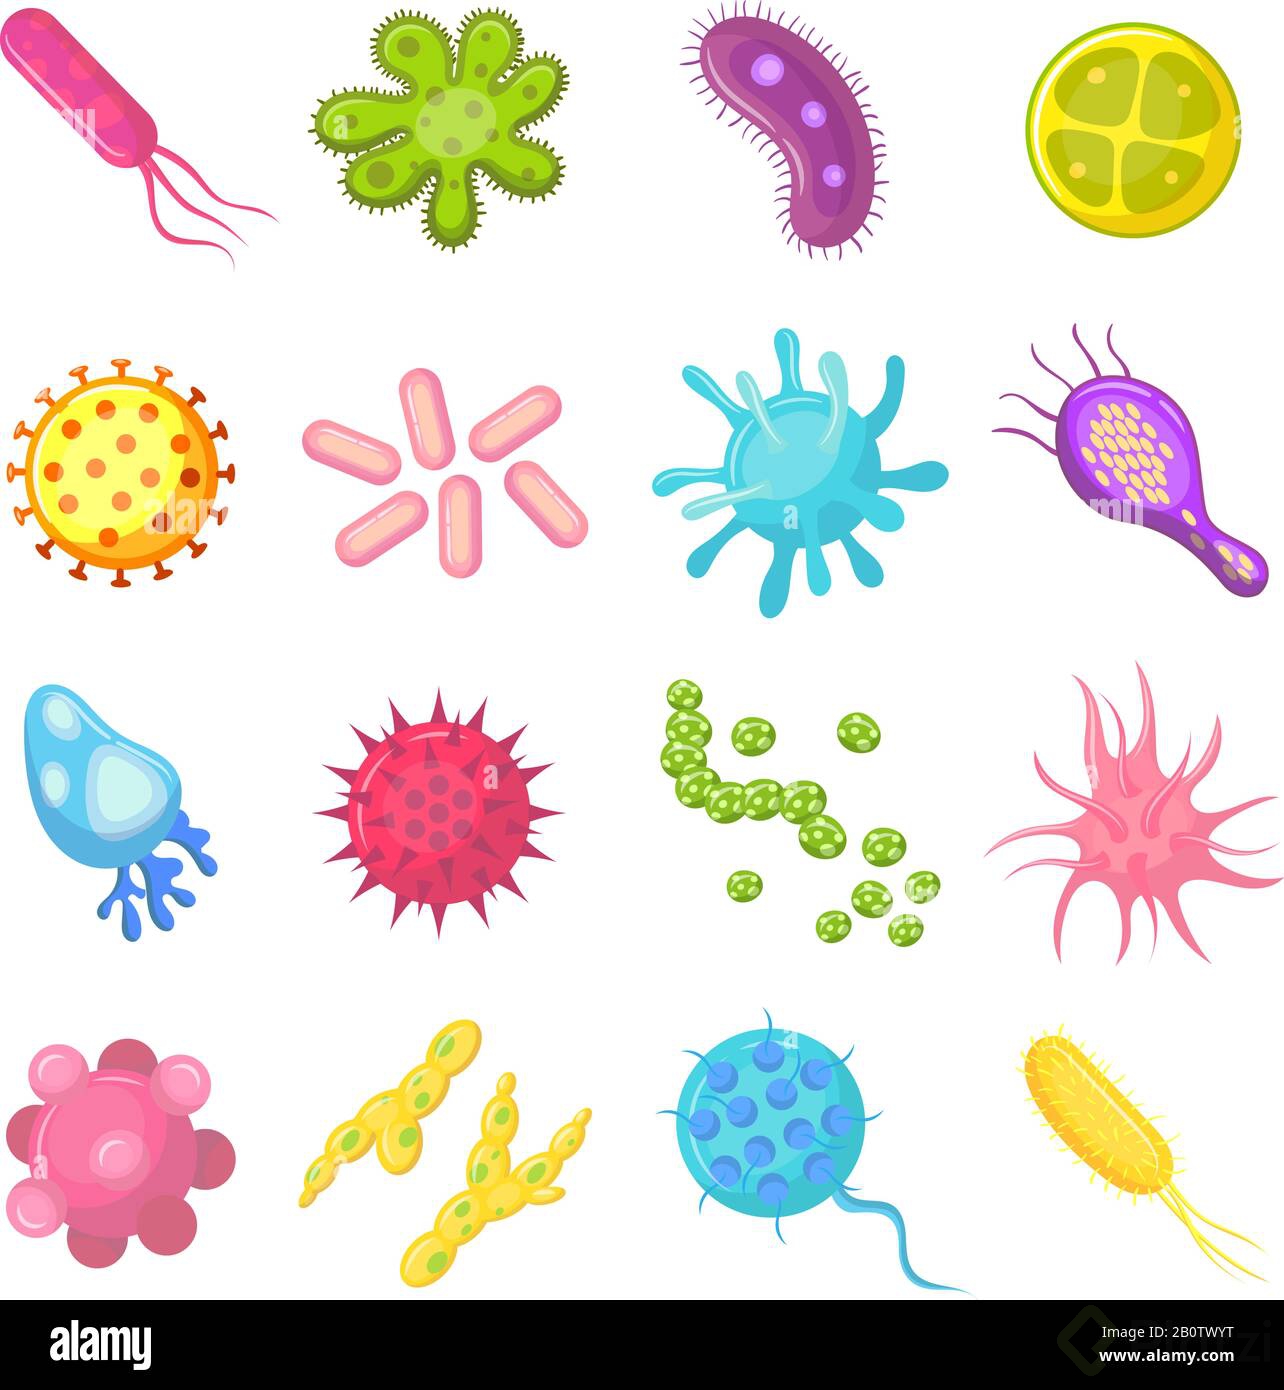 las-bacterias-y-los-germenes-coloridos-establecen-los-microorganismos-que-causan-enfermedades-bacterias-virus-hongos-ilustracion-de-dibujos-animados-aislados-de-vectores-2b0twyt.jpg